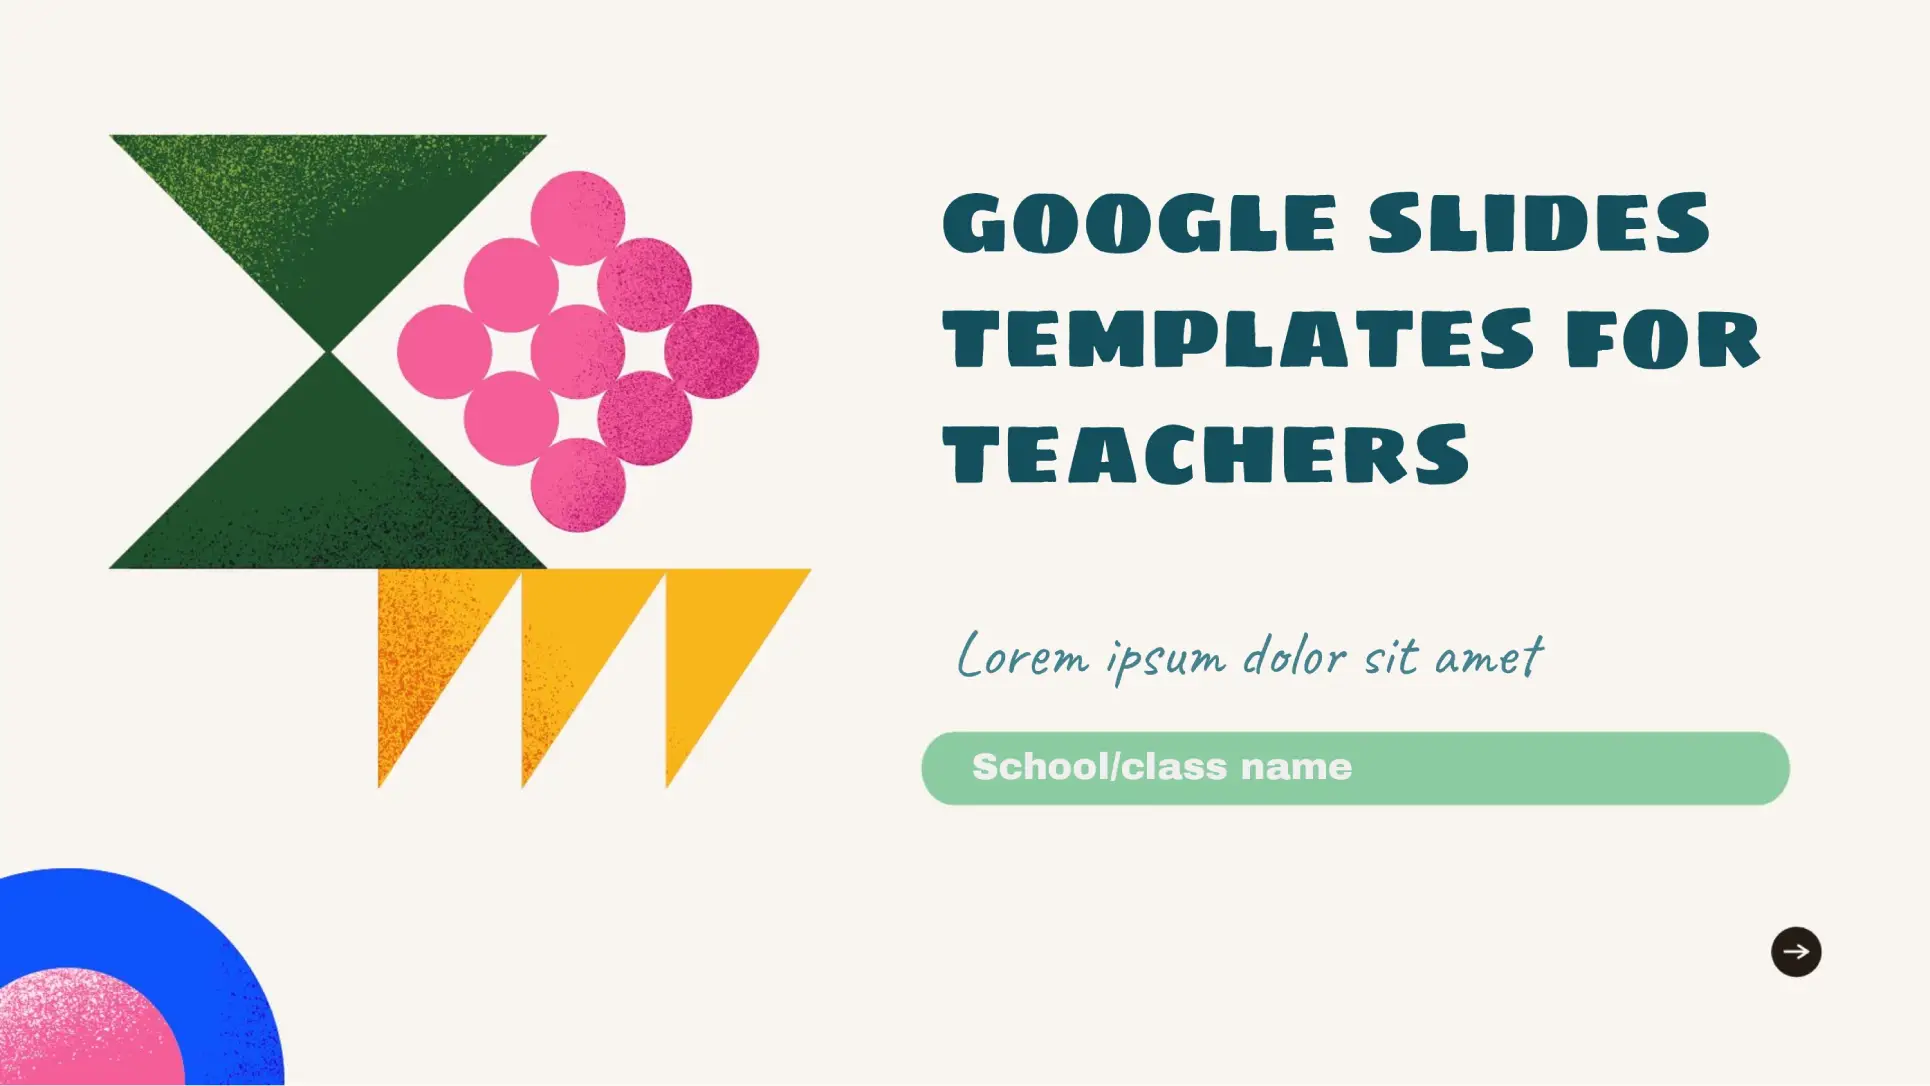 For Teachers Template for Google Slides